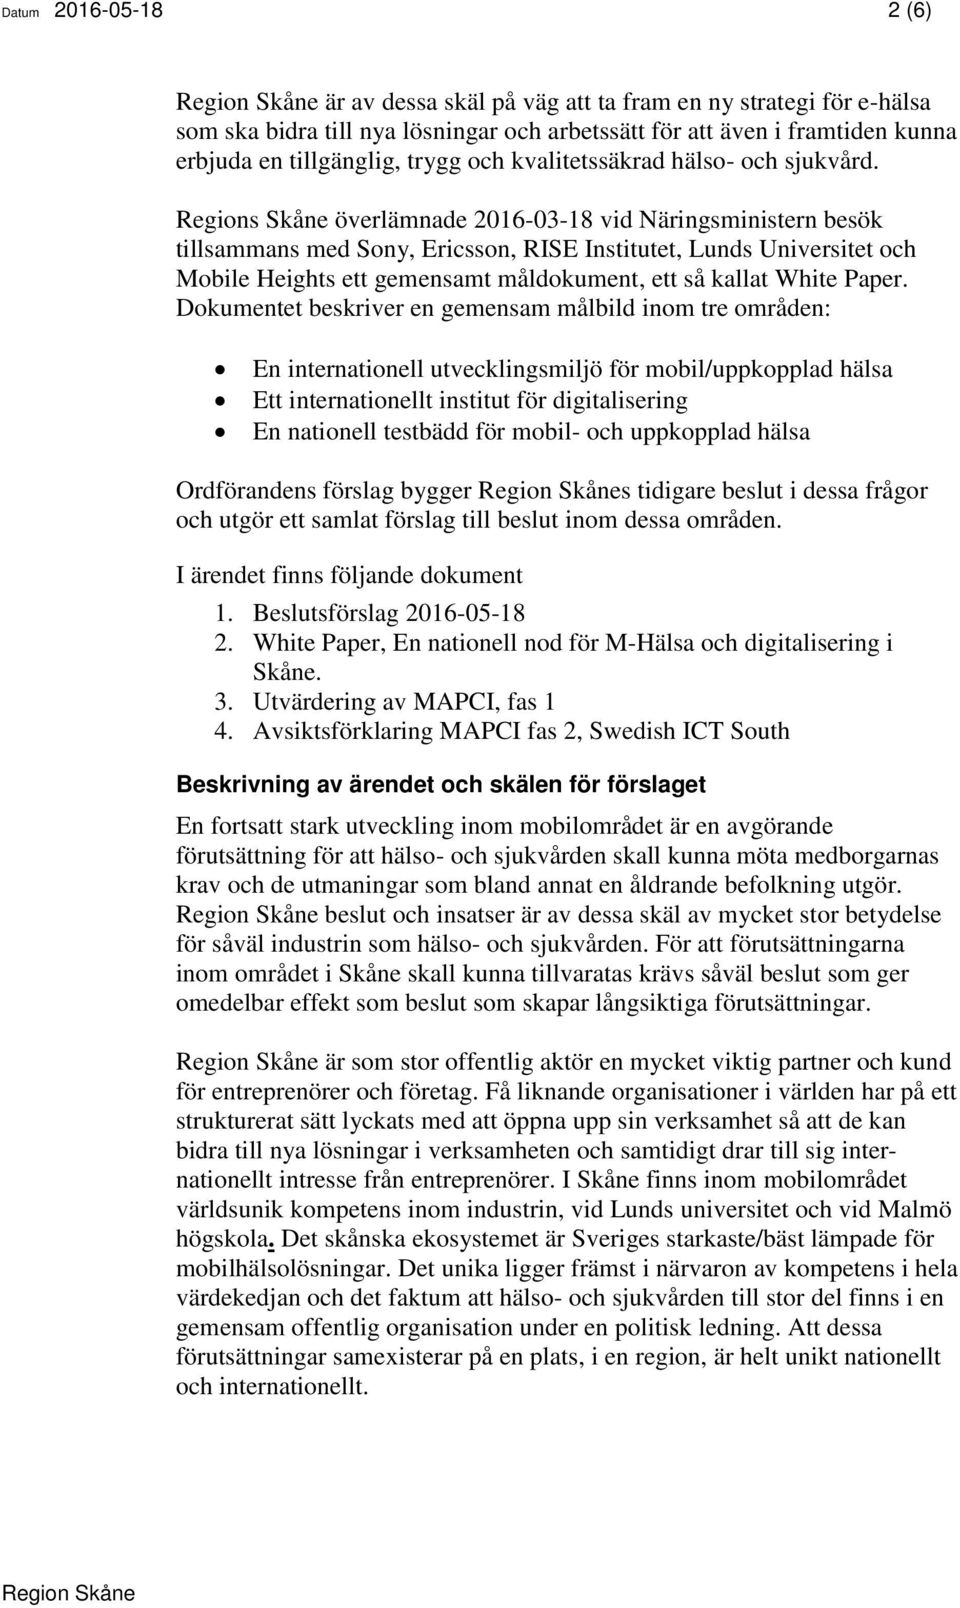 Regions Skåne överlämnade 2016-03-18 vid Näringsministern besök tillsammans med Sony, Ericsson, RISE Institutet, Lunds Universitet och Mobile Heights ett gemensamt måldokument, ett så kallat White